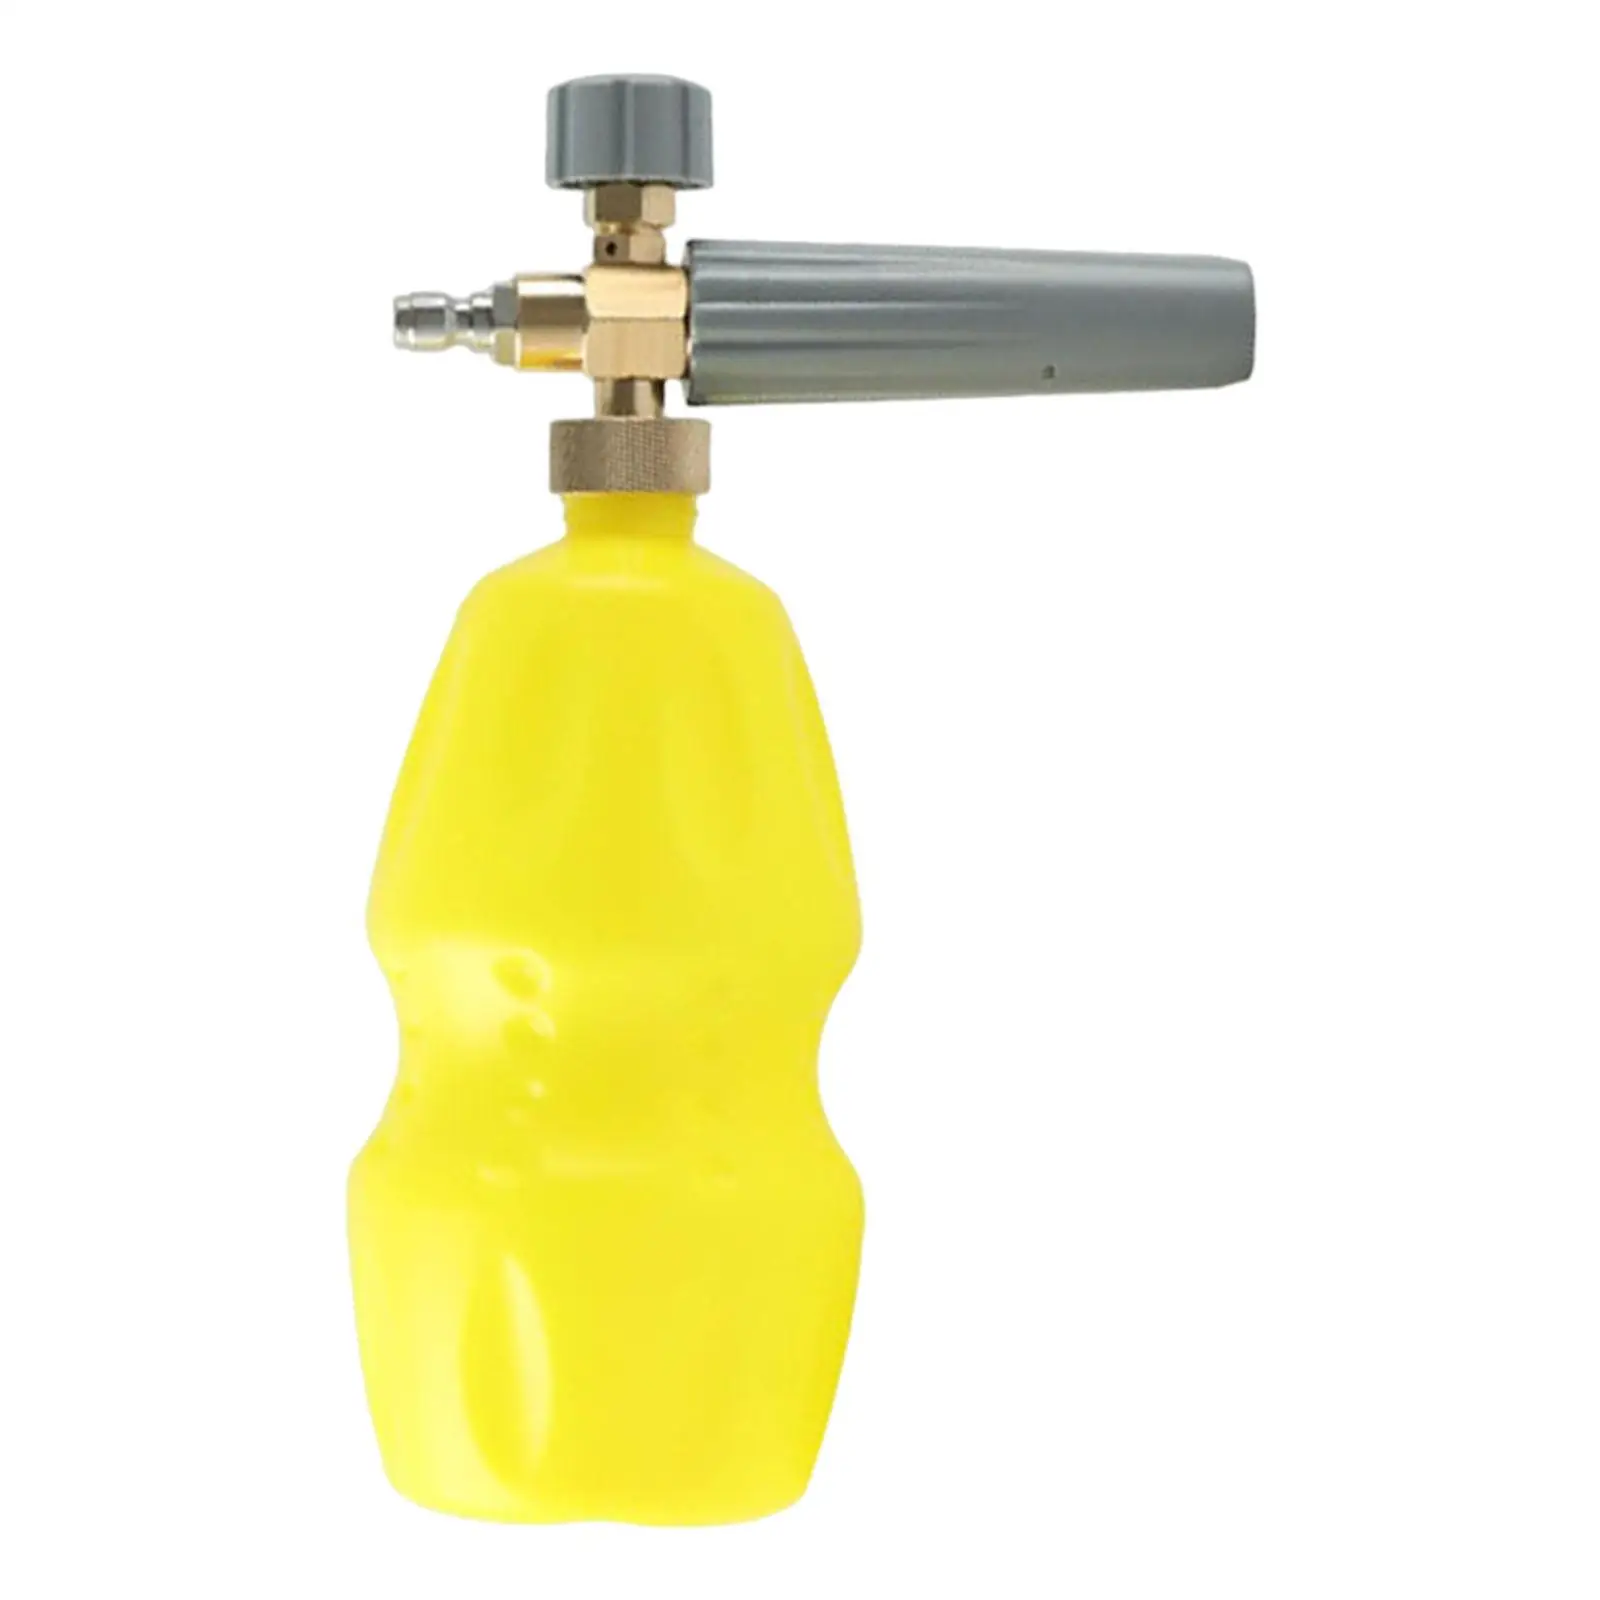 Handheld Lance Washer Bottle Soap Pump for Car Pressure Washers